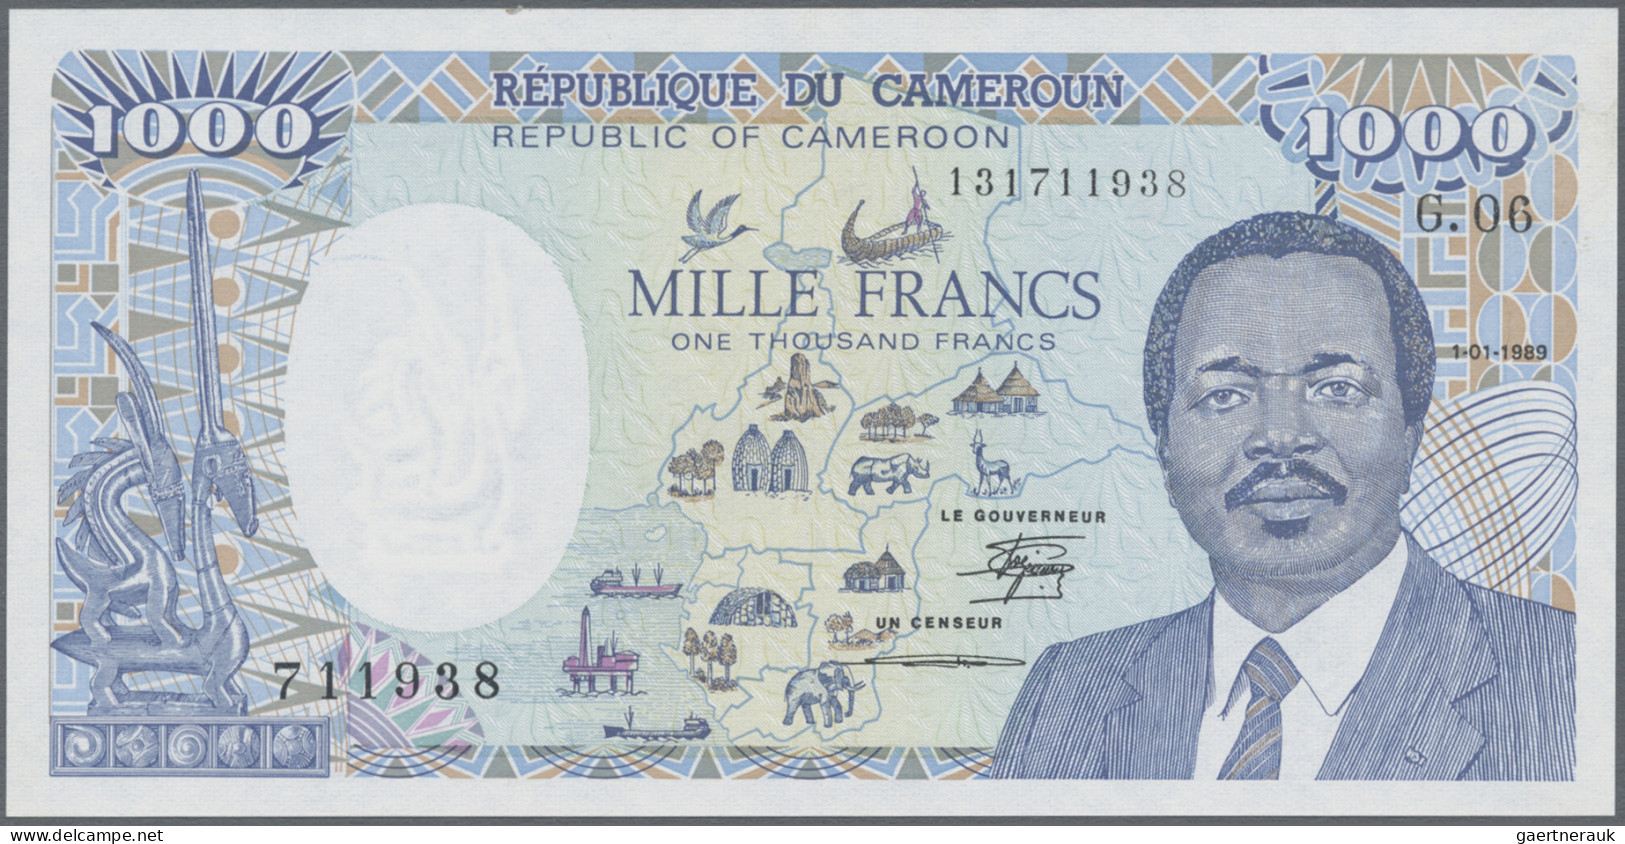 Cameroon: Banque Des États De L'Afrique Centrale - République Du Cameroun, Pair - Cameroun